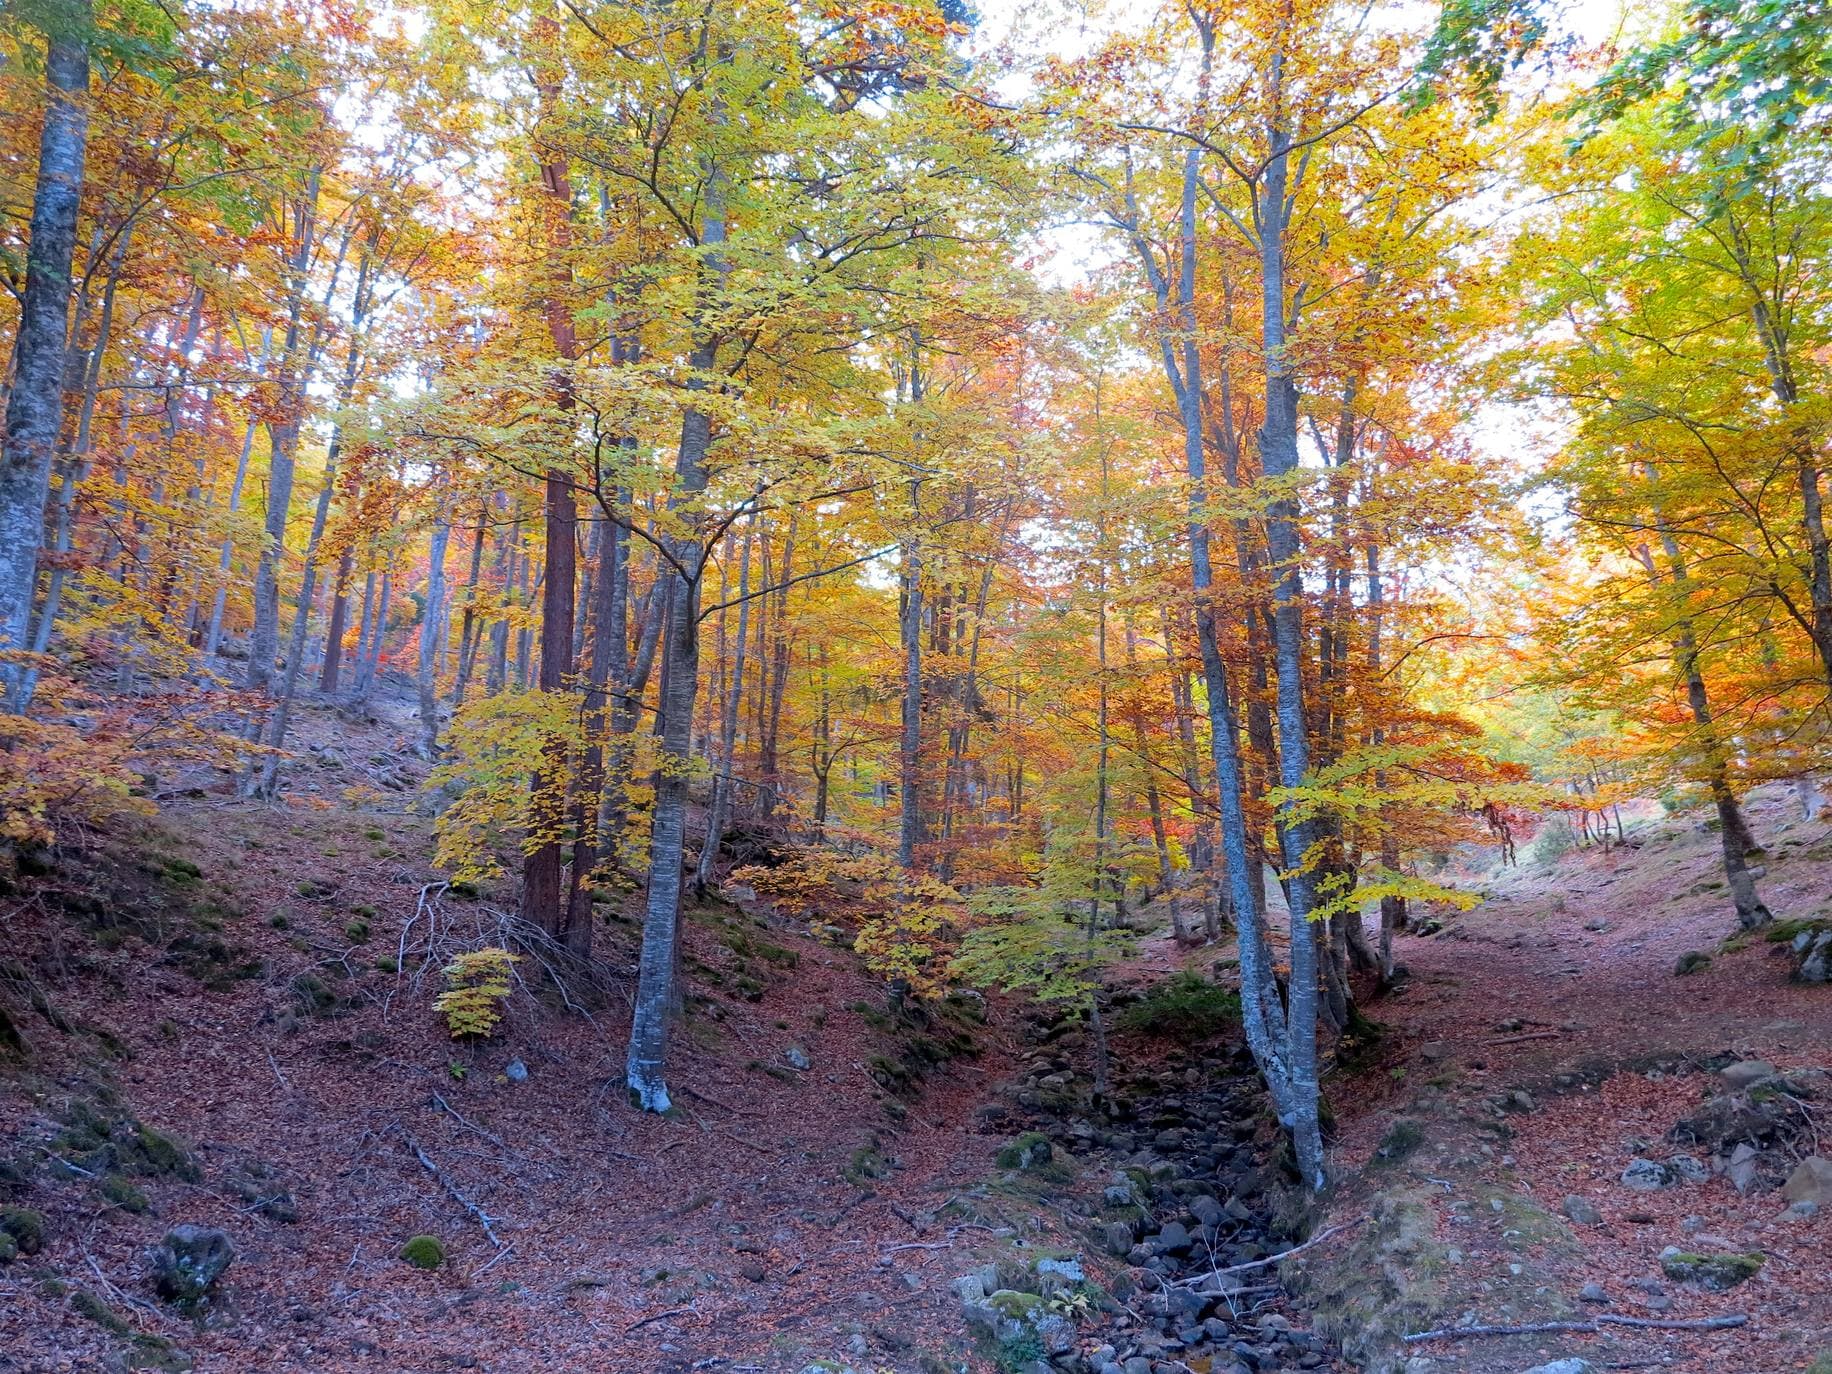 Con el temporal arreciando, el otoño da sus últimos suspiros en los Cameros riojanos dejando como testimonio bonitas estampas de bosques encendidos en llamativos colores. Un lujo para el paseo y la fotografía